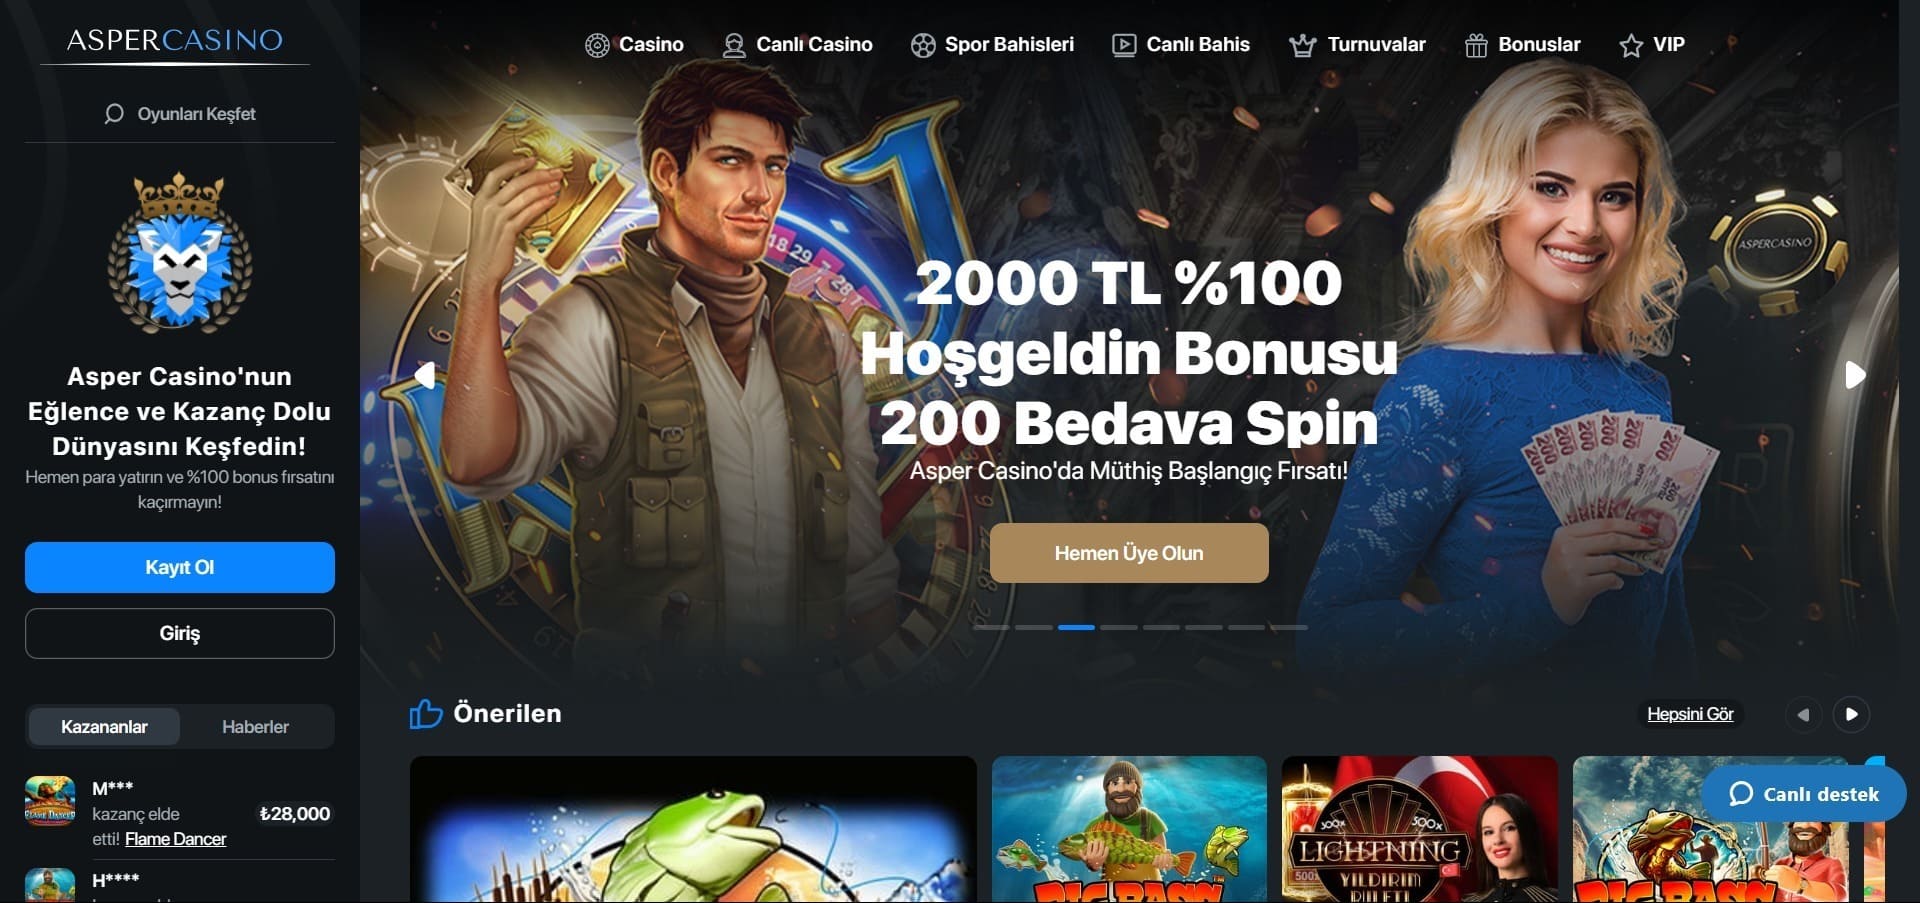 Asper Casino'nun resmi web sitesi